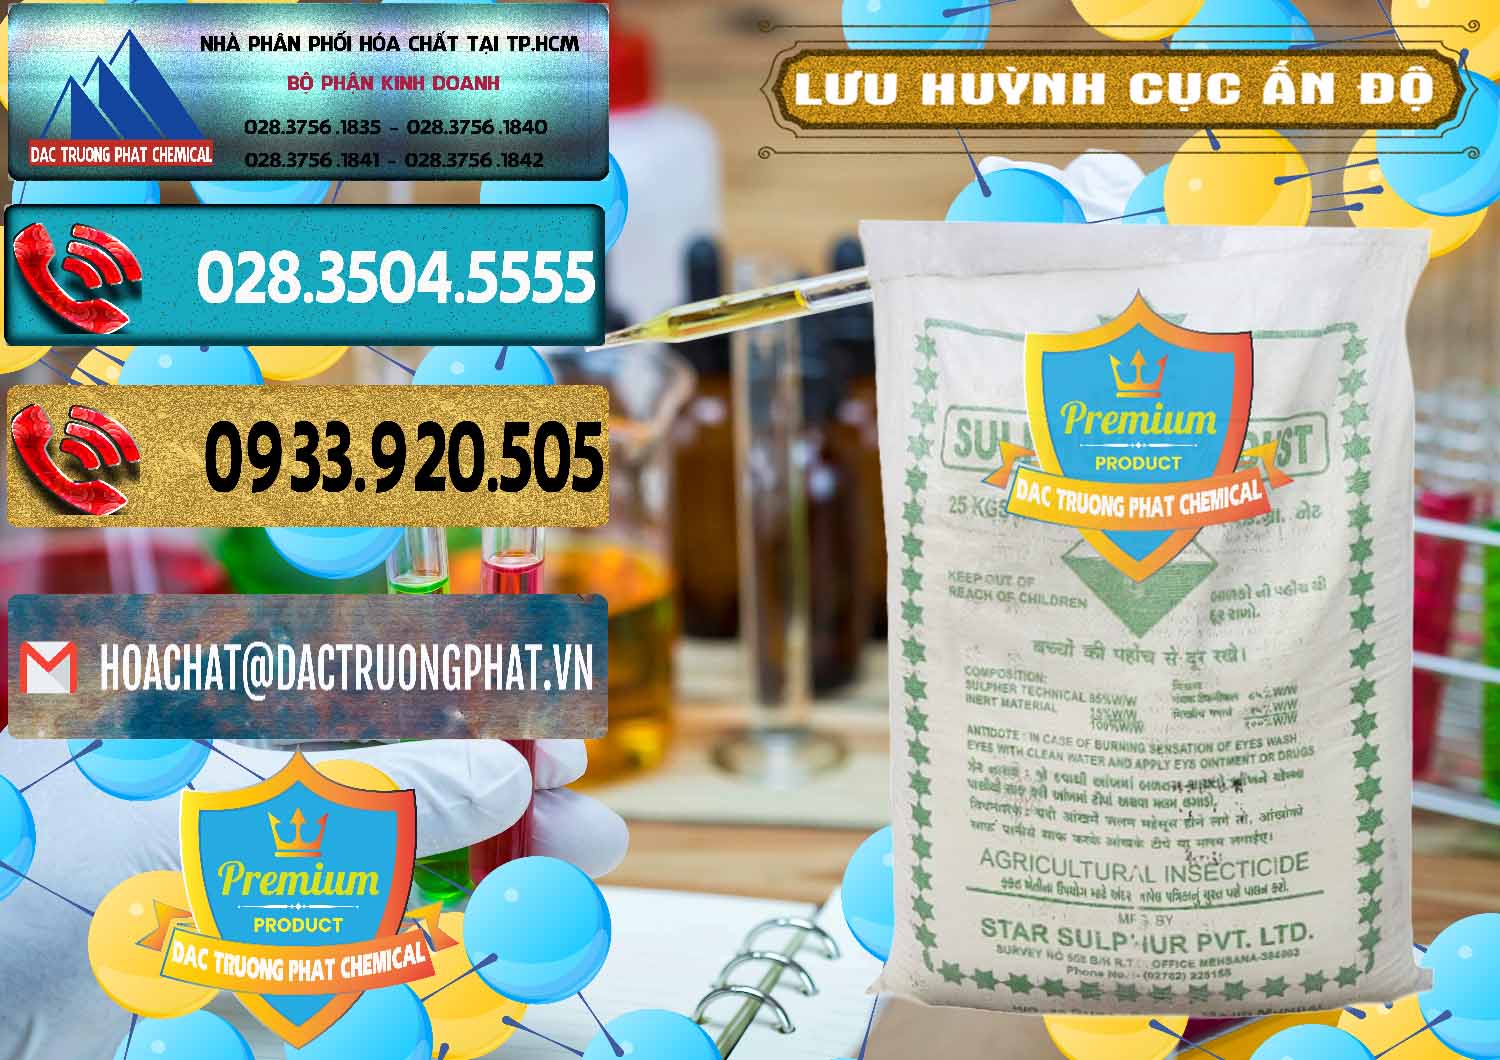 Cty chuyên bán _ cung ứng Lưu huỳnh Cục - Sulfur Ấn Độ India - 0348 - Chuyên cung cấp & phân phối hóa chất tại TP.HCM - hoachatdetnhuom.com